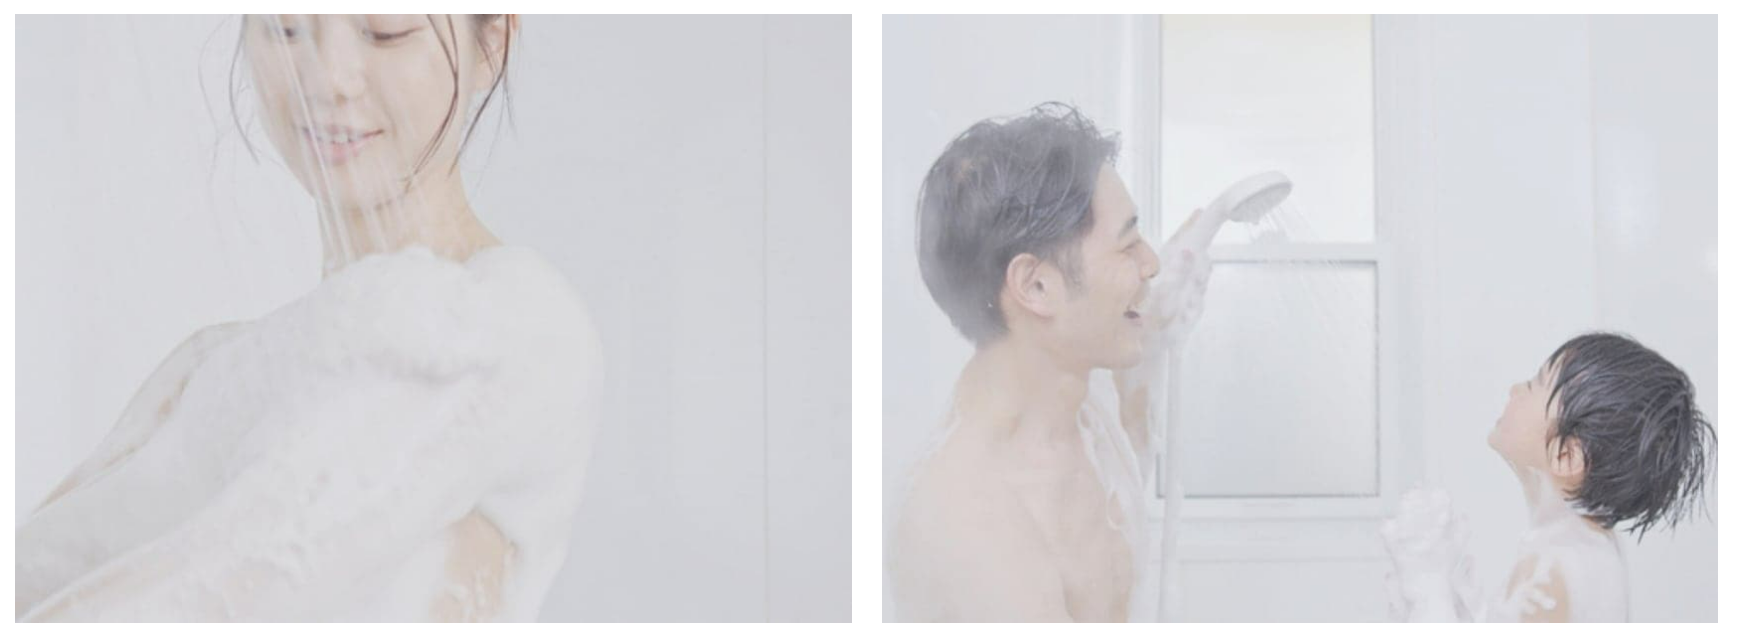 柔らかく温かい泡が出る泡シャワー「KINUAMIU」 | トラミー